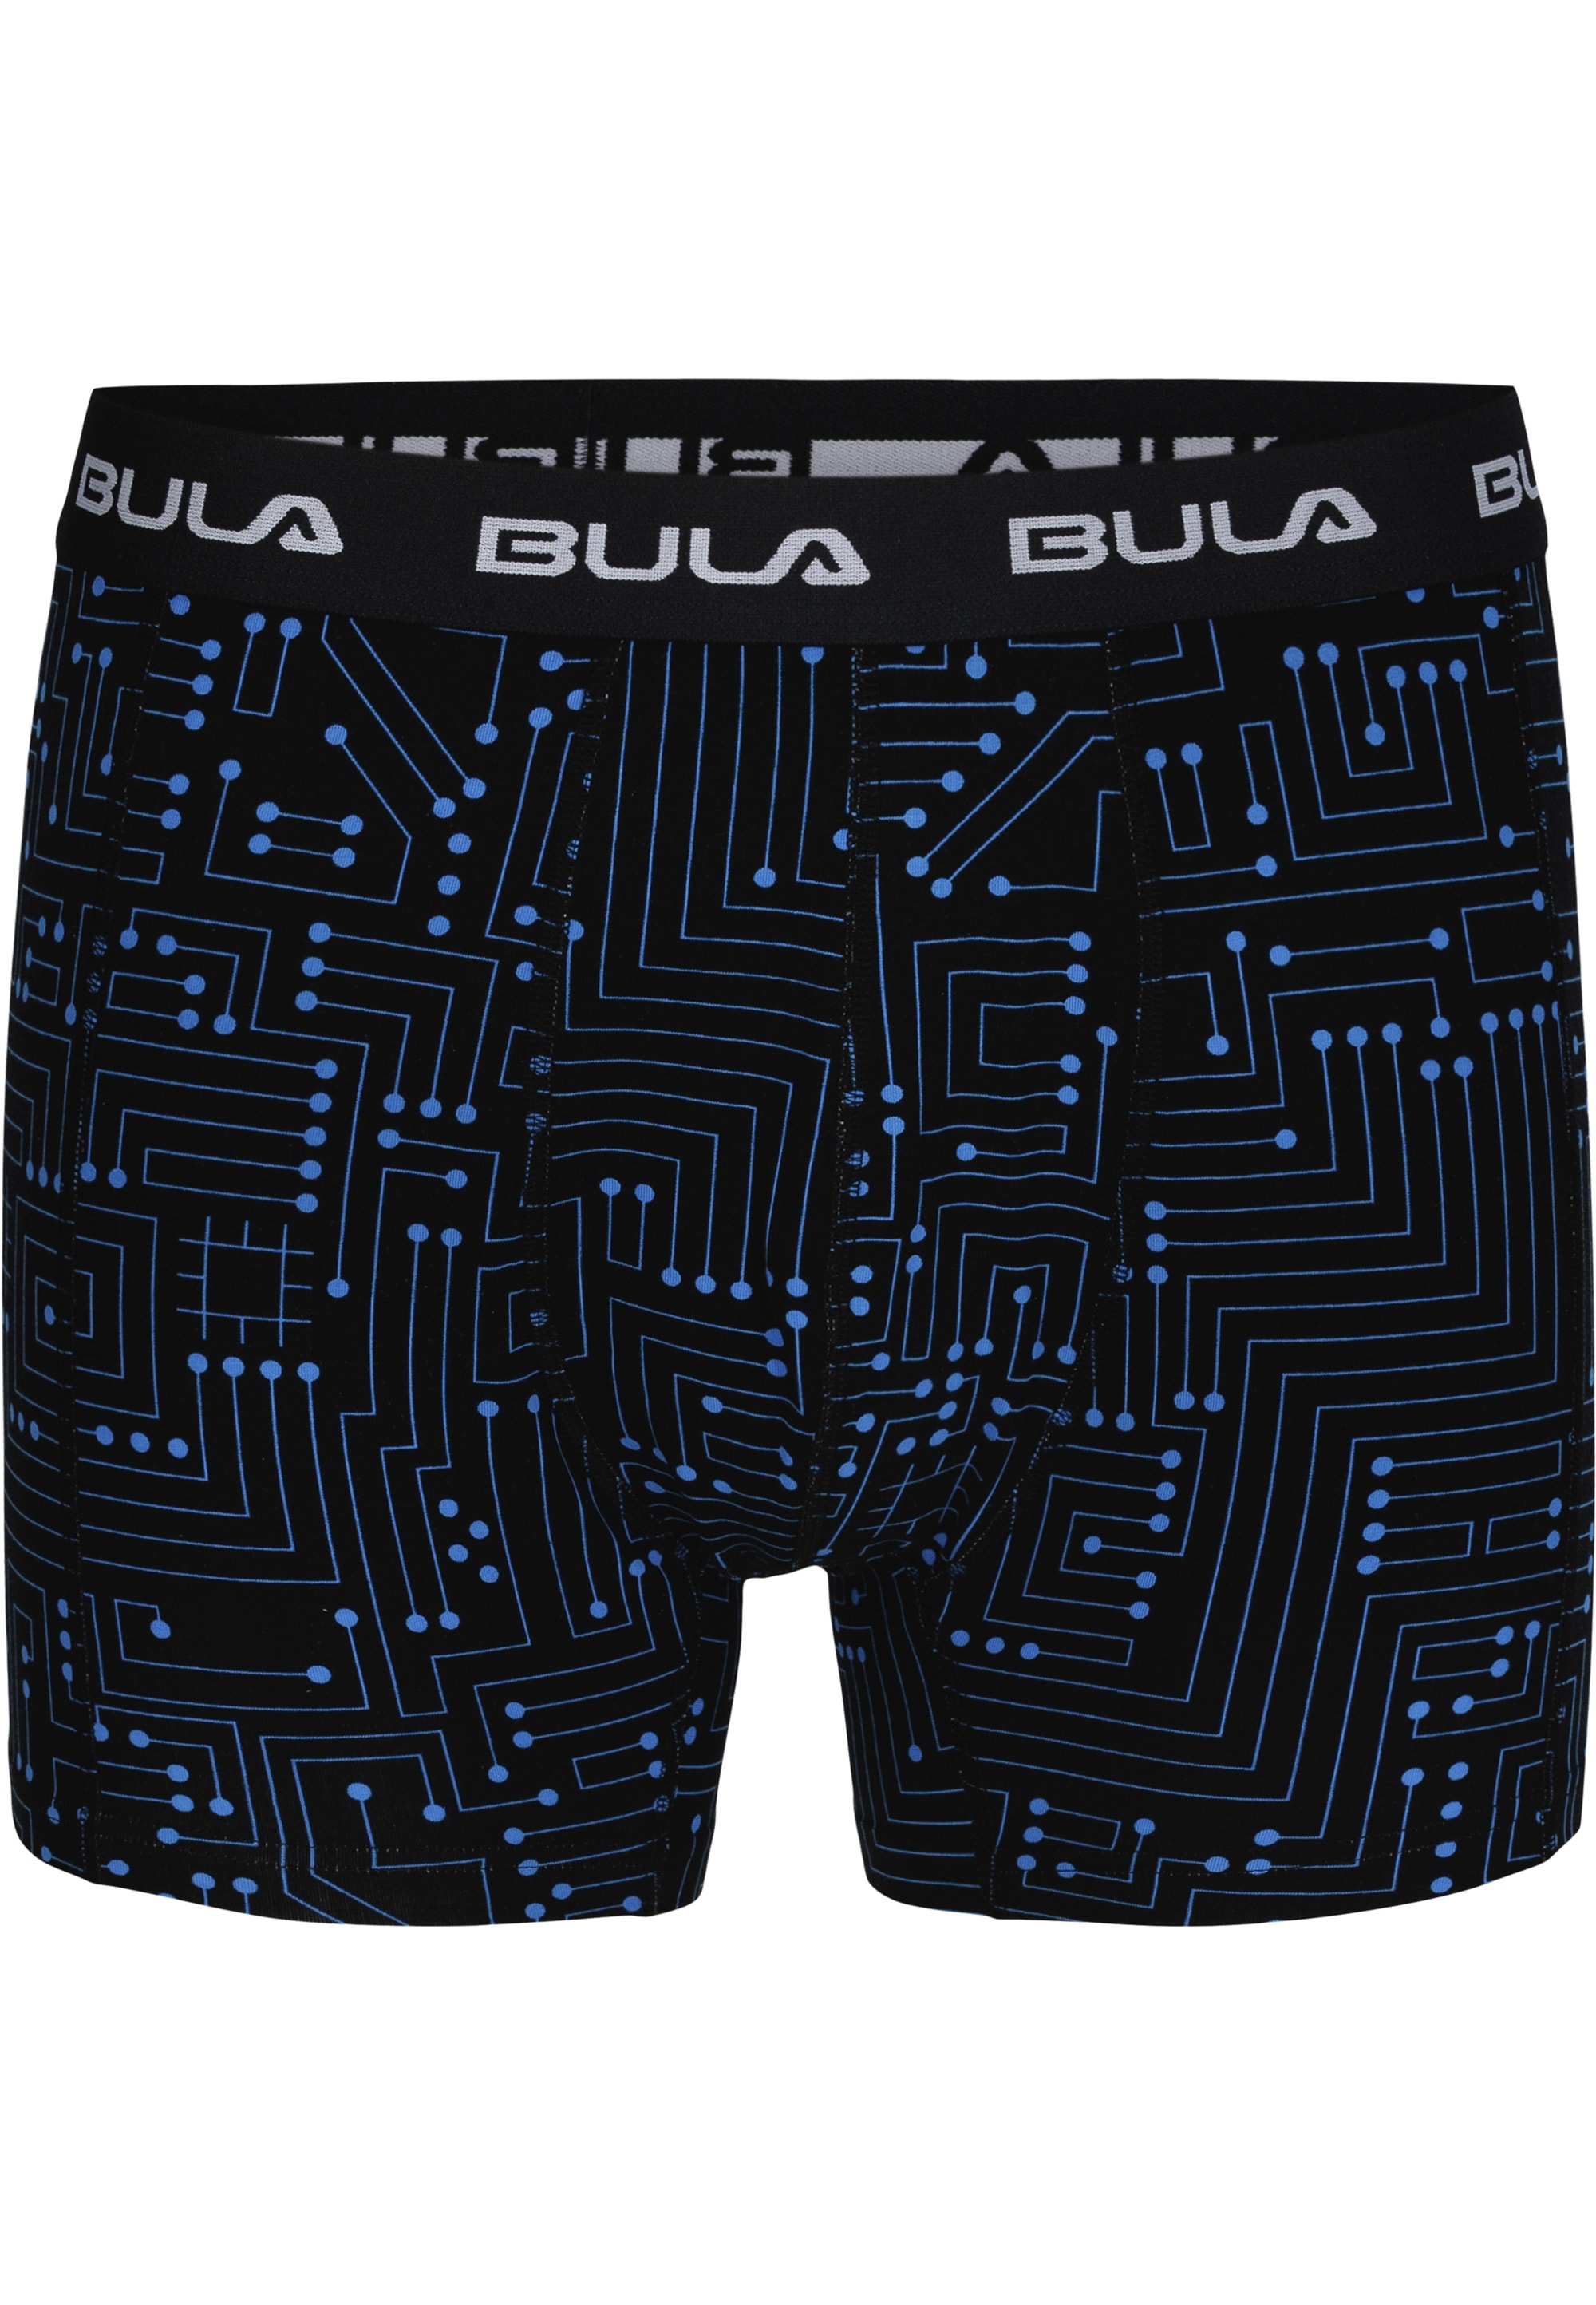 BULA Boxershorts, 2er-Pack im sportlichen Design